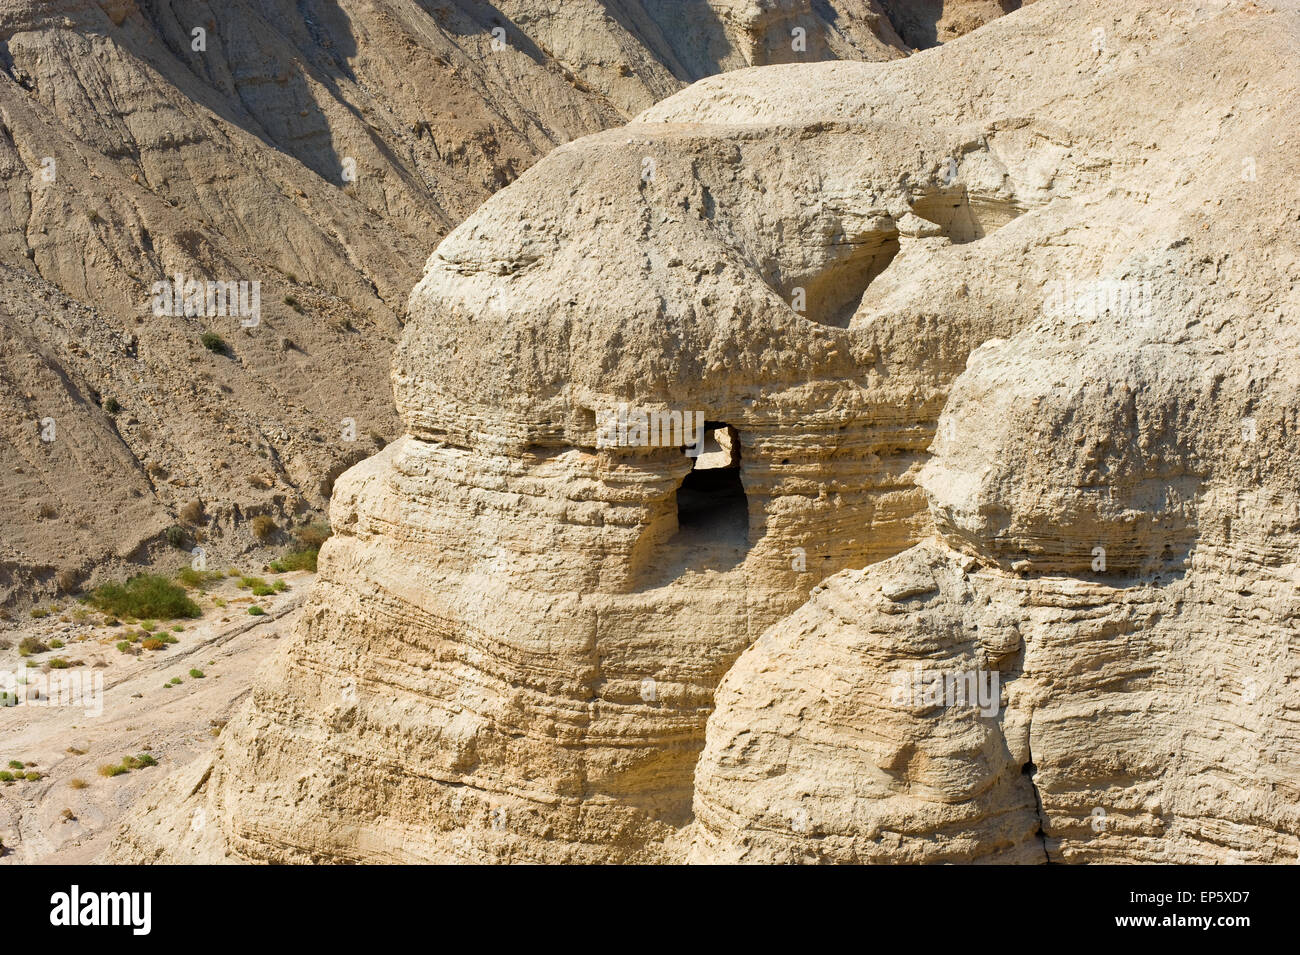 Die Schriftrollen Höhle von Qumran in Israel, wo die Schriftrollen vom Toten Meer gefunden wurden Stockfoto